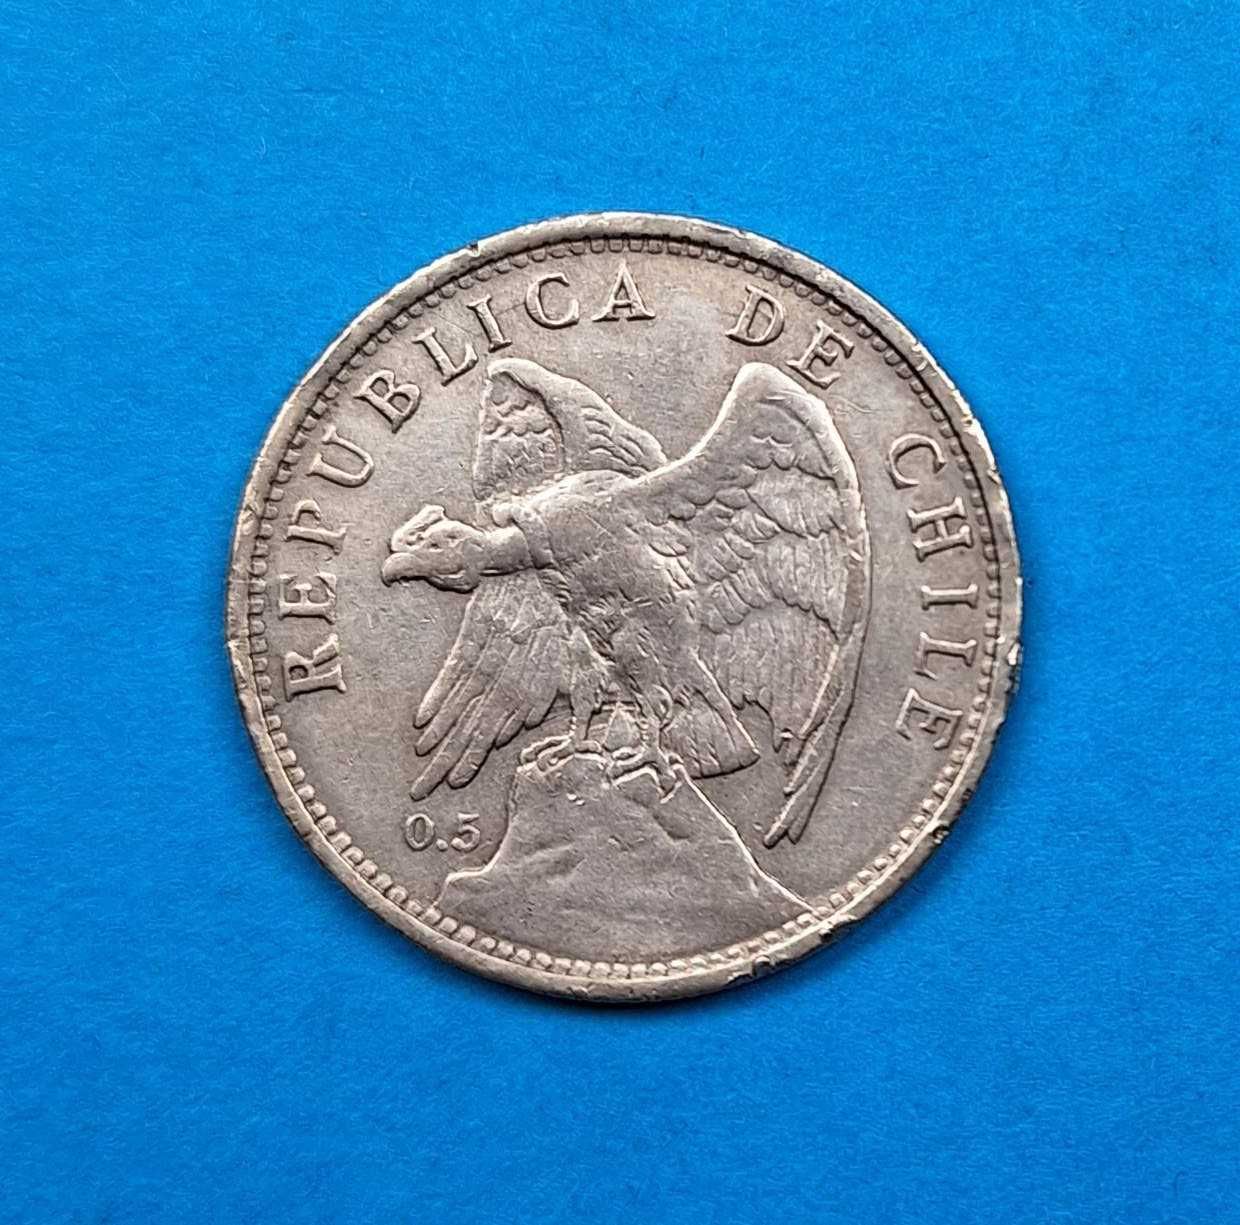 Chile 1 peso rok 1924, dobry stan, srebro 0,500